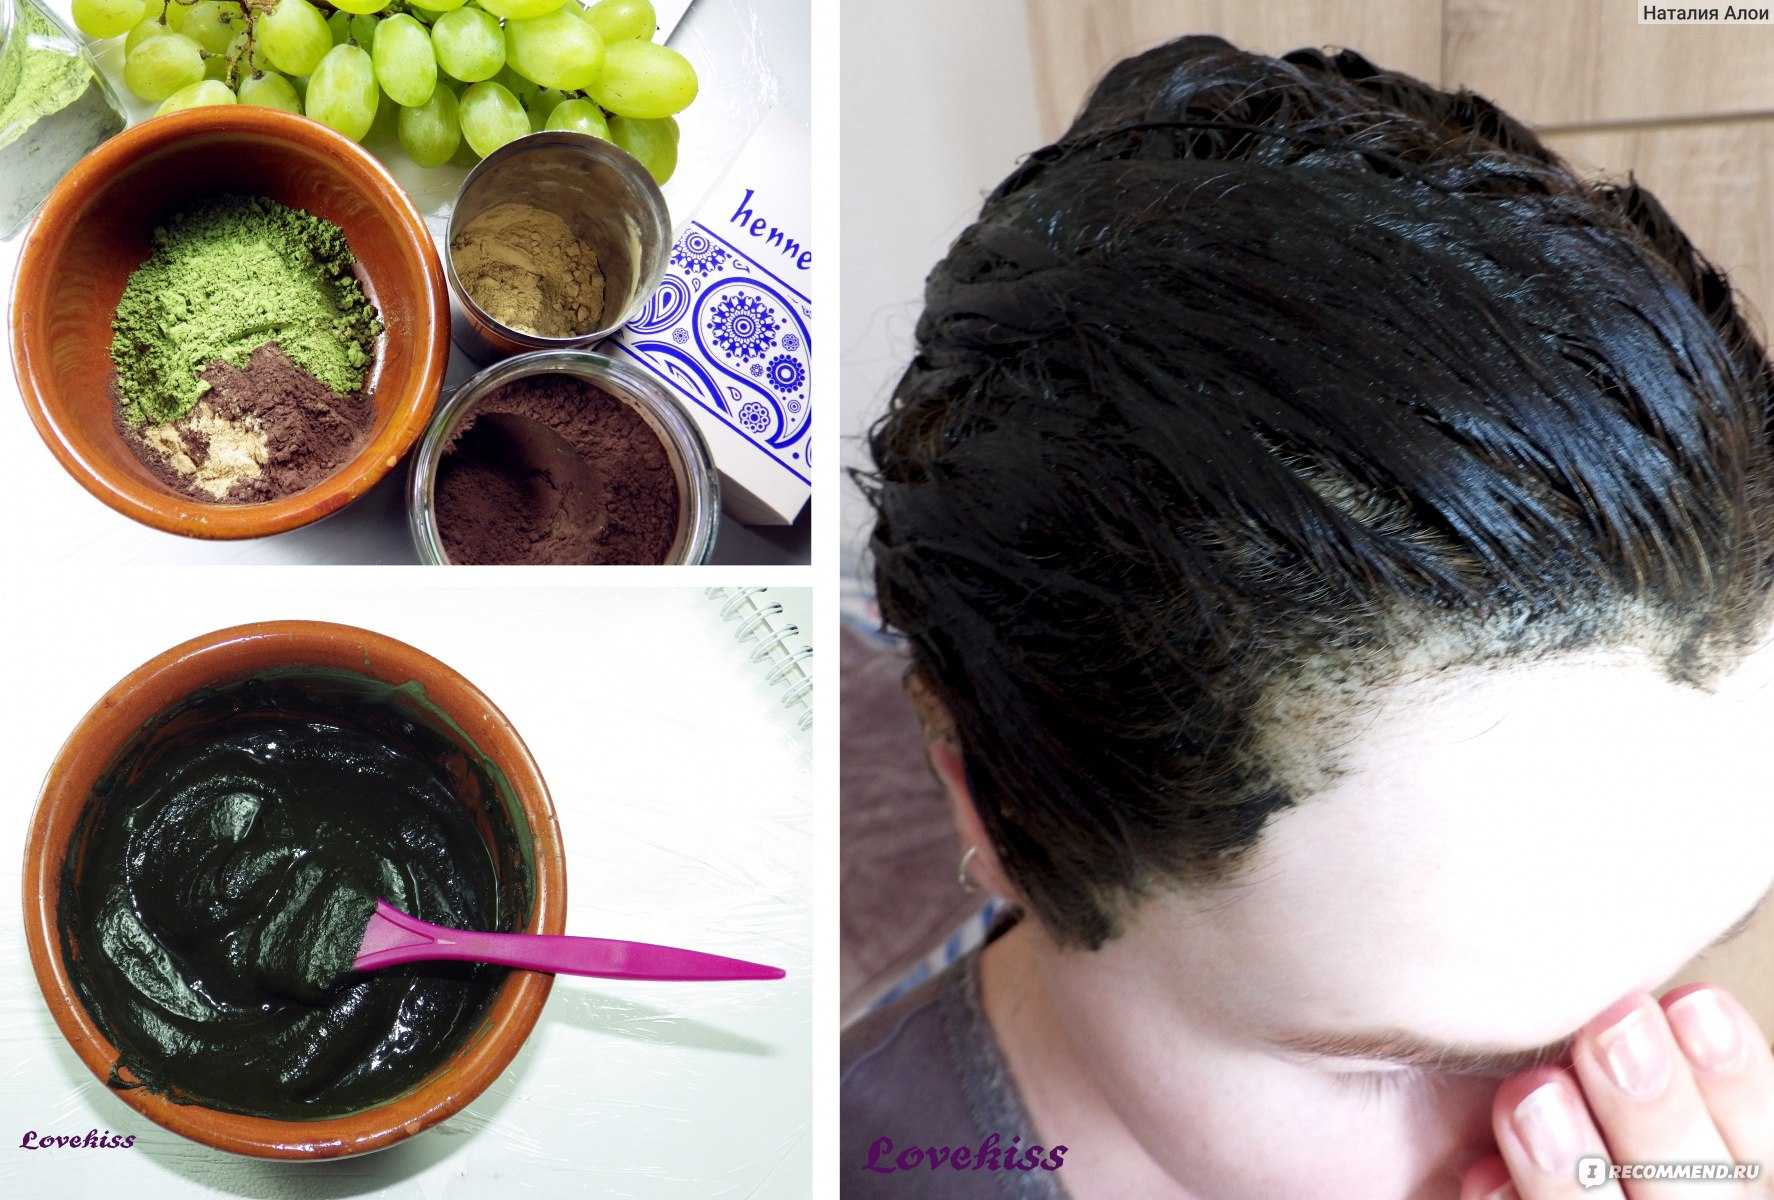 Как покрасить волосы в домашних условиях хной в черный цвет в домашних условиях